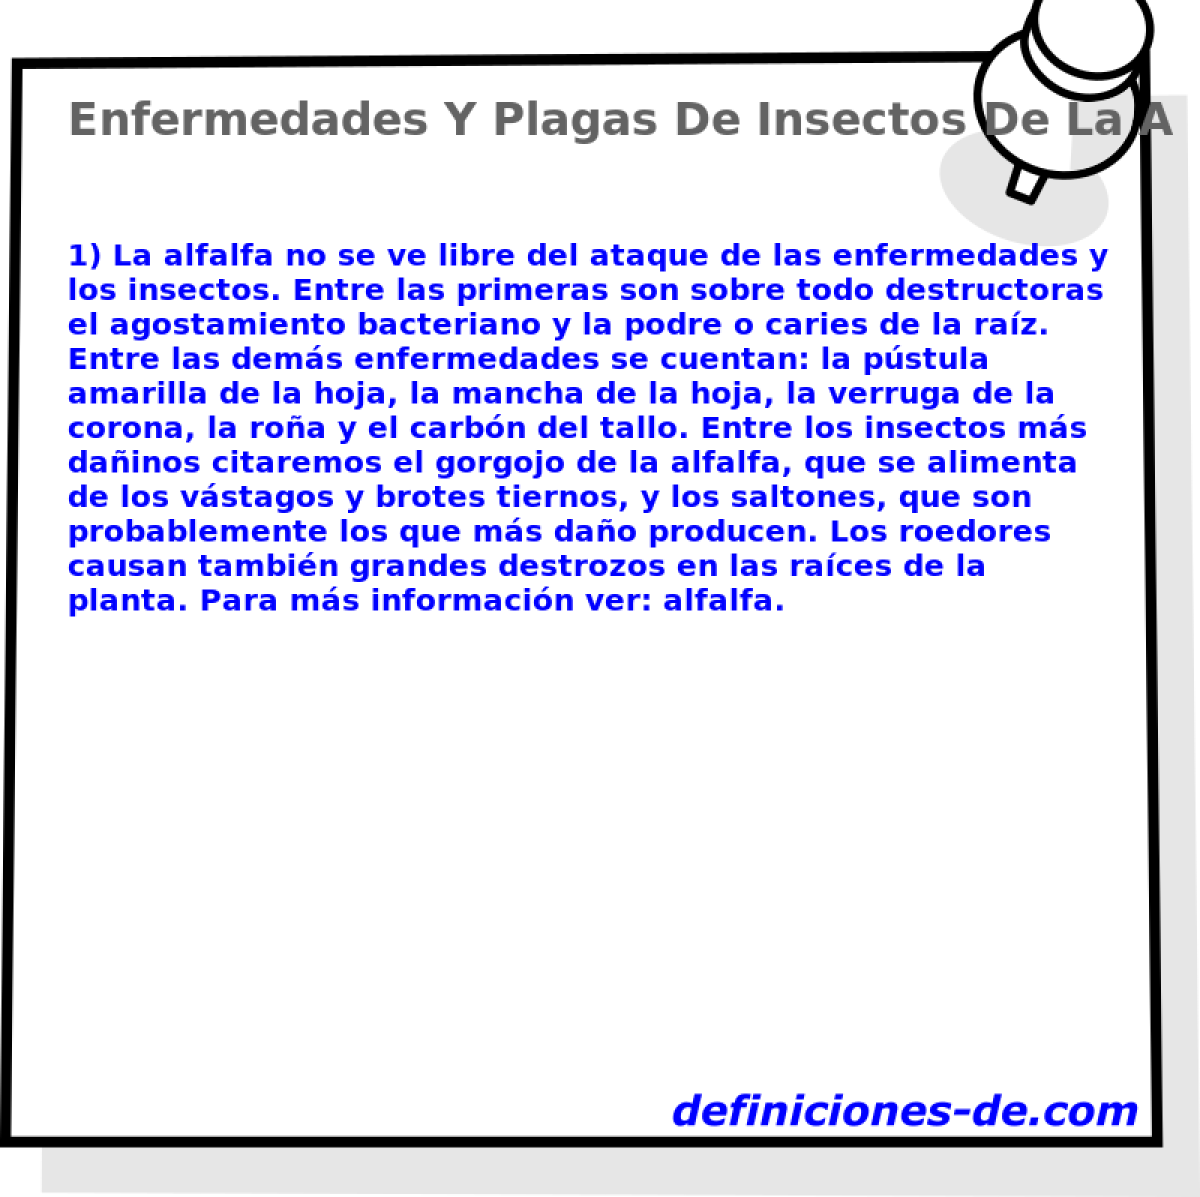 Enfermedades Y Plagas De Insectos De La Alfalfa 